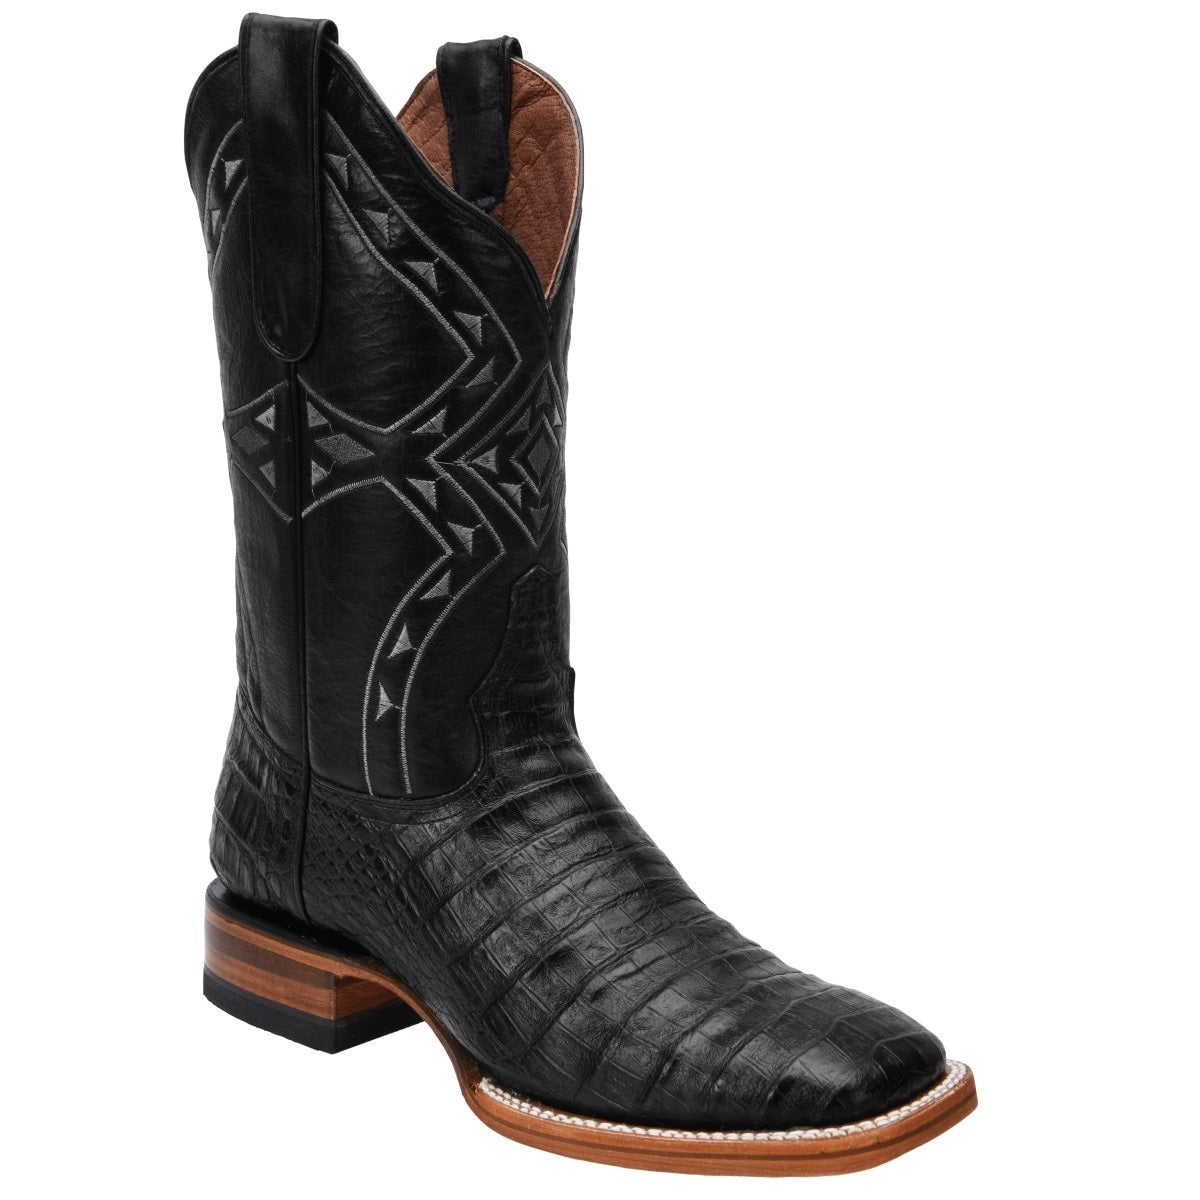 Botas Vaqueras TM-WD0359 - Western Boots